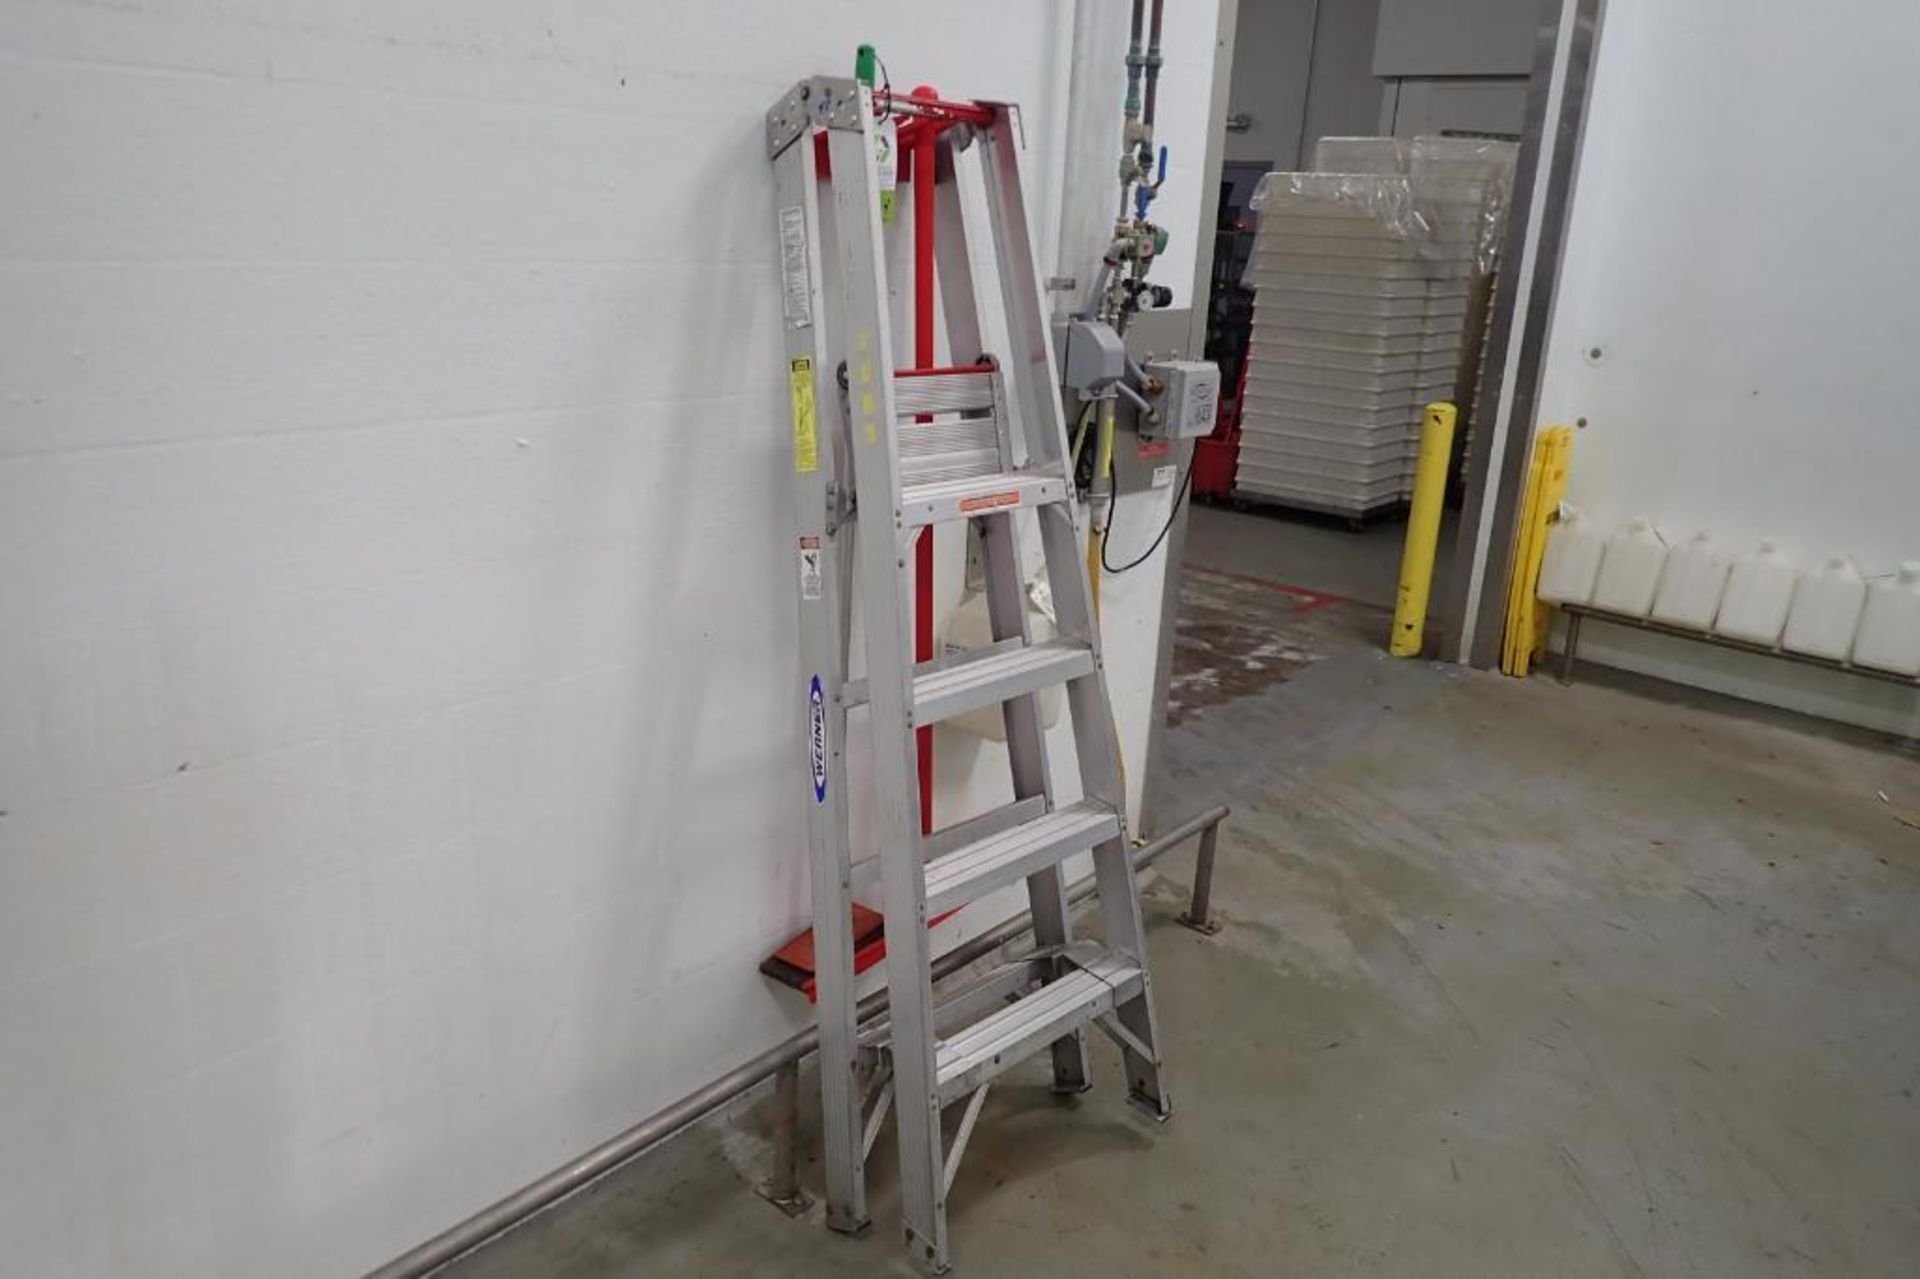 Werner 4 ft. aluminum step ladder - ** Rigging Fee: $ 10 ** - Image 2 of 2